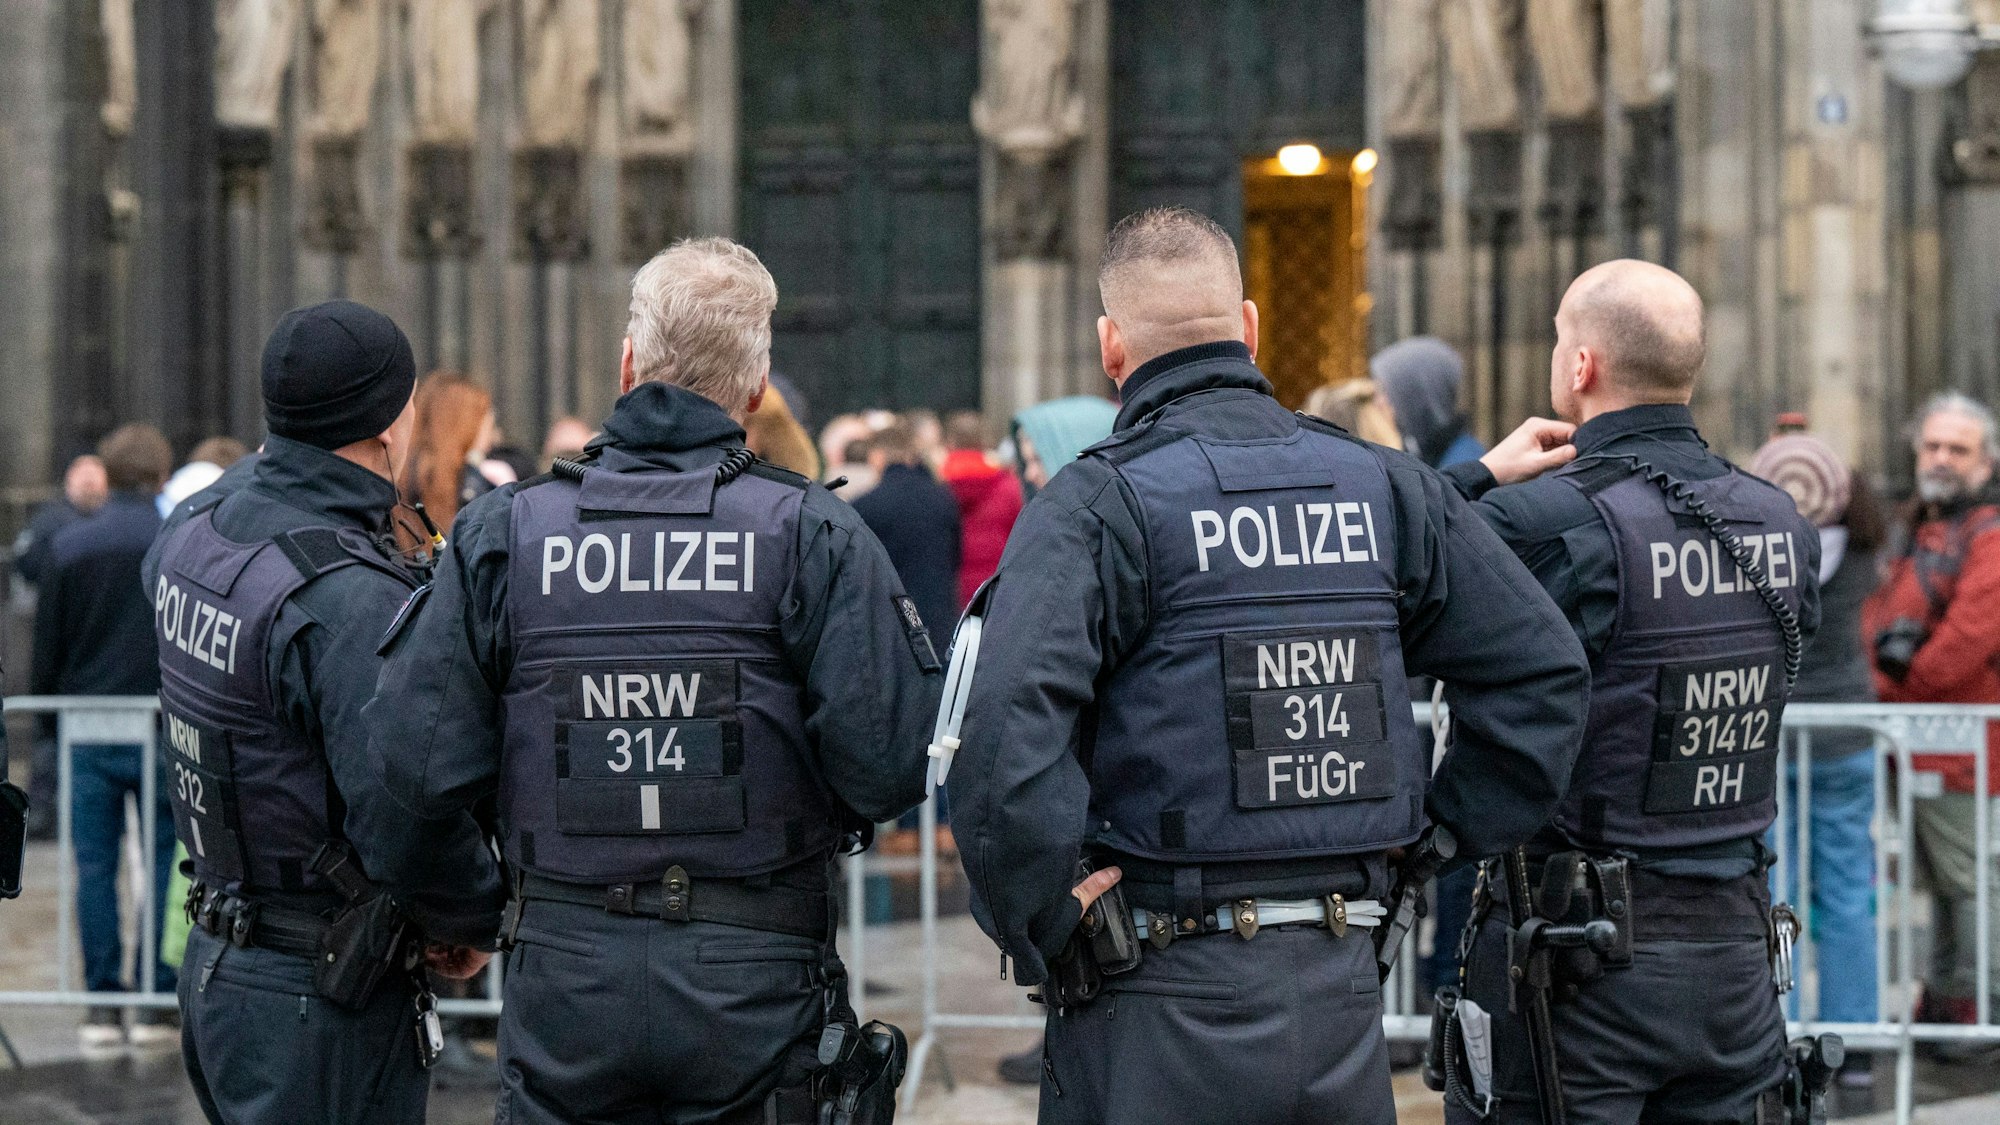 Polizisten kontrollierten an Heiligabend alle Besucherinnen und Besucher des Kölner Doms. Zuvor hatte es Hinweise auf einen islamistischen Sprengstoffanschlag an Weihnachten oder Silvester auf die Kirche gegeben. Die Sicherheitsmaßnahmen wurden deshalb stark erhöht.